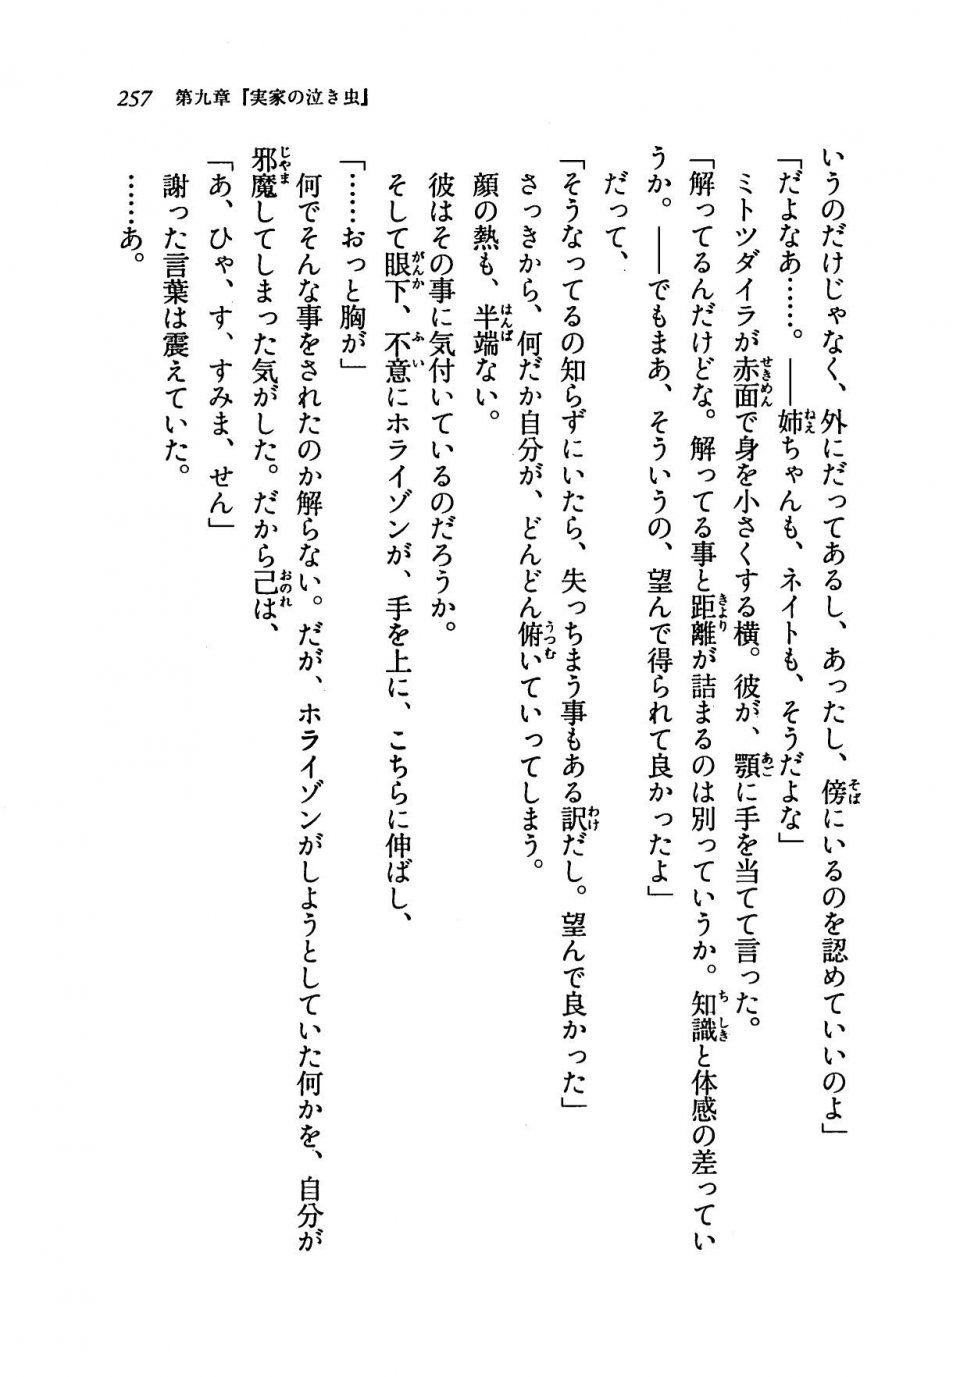 Kyoukai Senjou no Horizon LN Vol 19(8A) - Photo #257